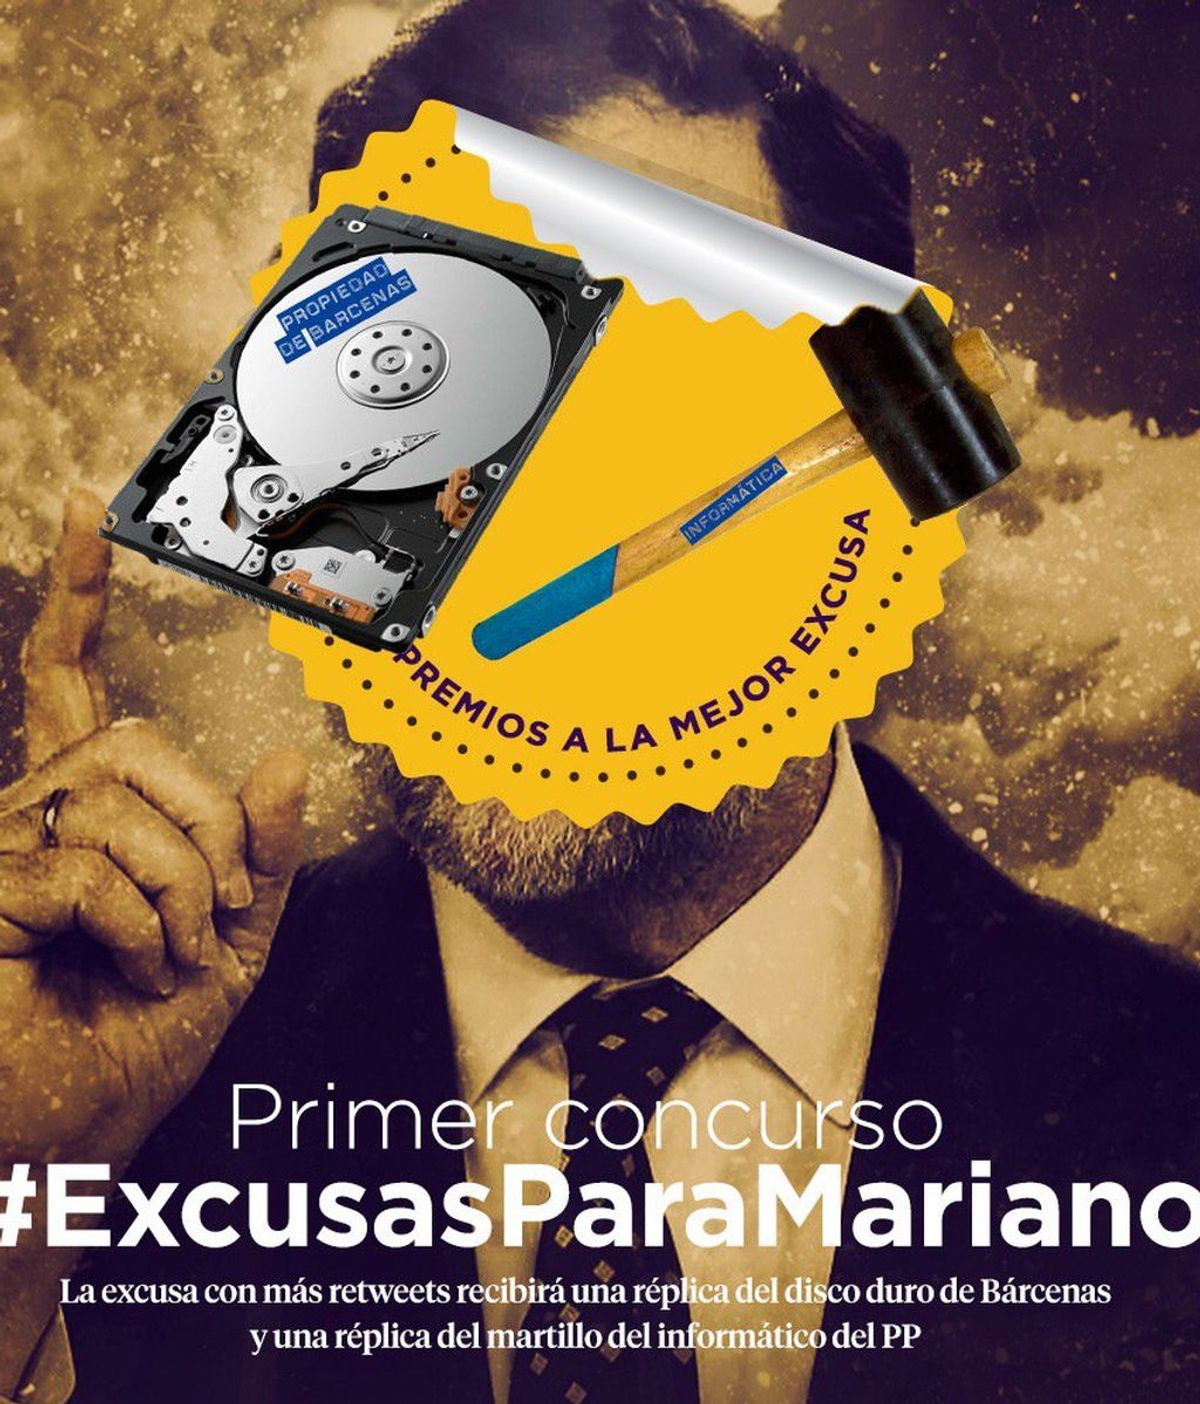 Pablo Iglesias y su equipo se 'mofan' de las excusas de Rajoy en redes sociales